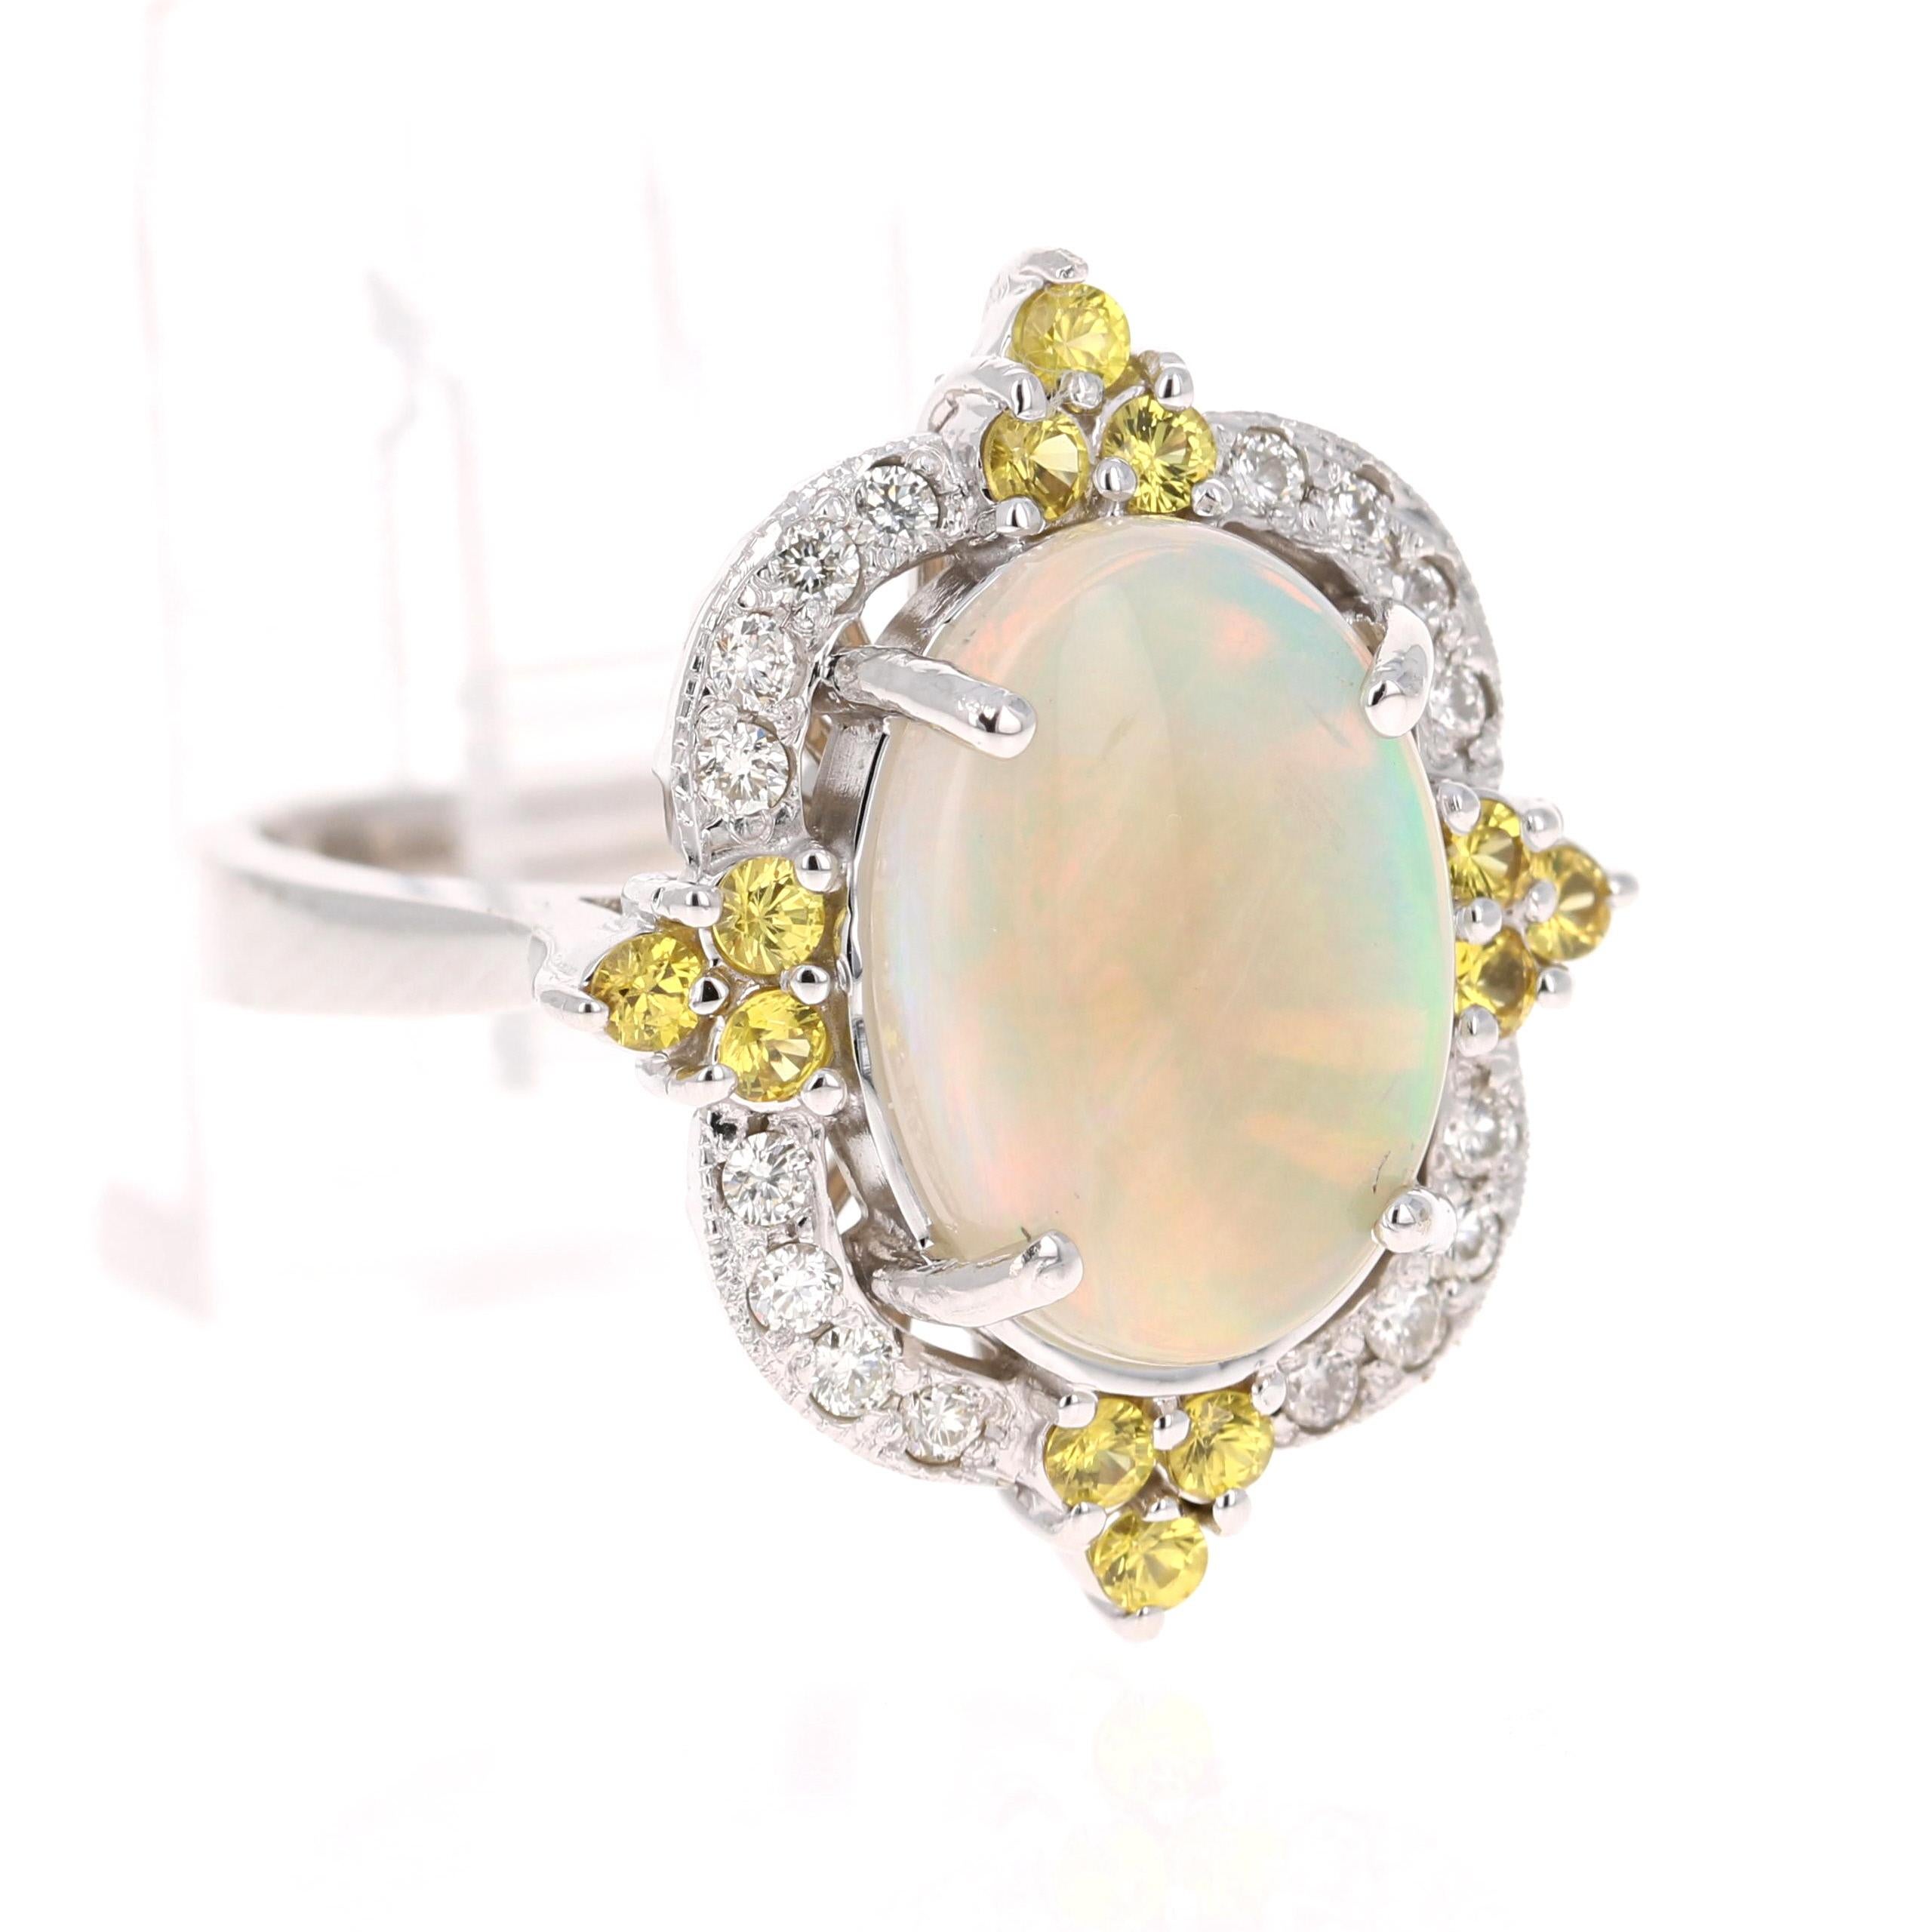 Opulente bague en opale, saphir jaune et diamant en or blanc 14K.

La magnifique opale d'origine éthiopienne de taille ovale, avec ses éclats de couleur saisissants, pèse 2,78 carats. L'Opale a des éclairs de couleur allant du vert, à l'orange, au